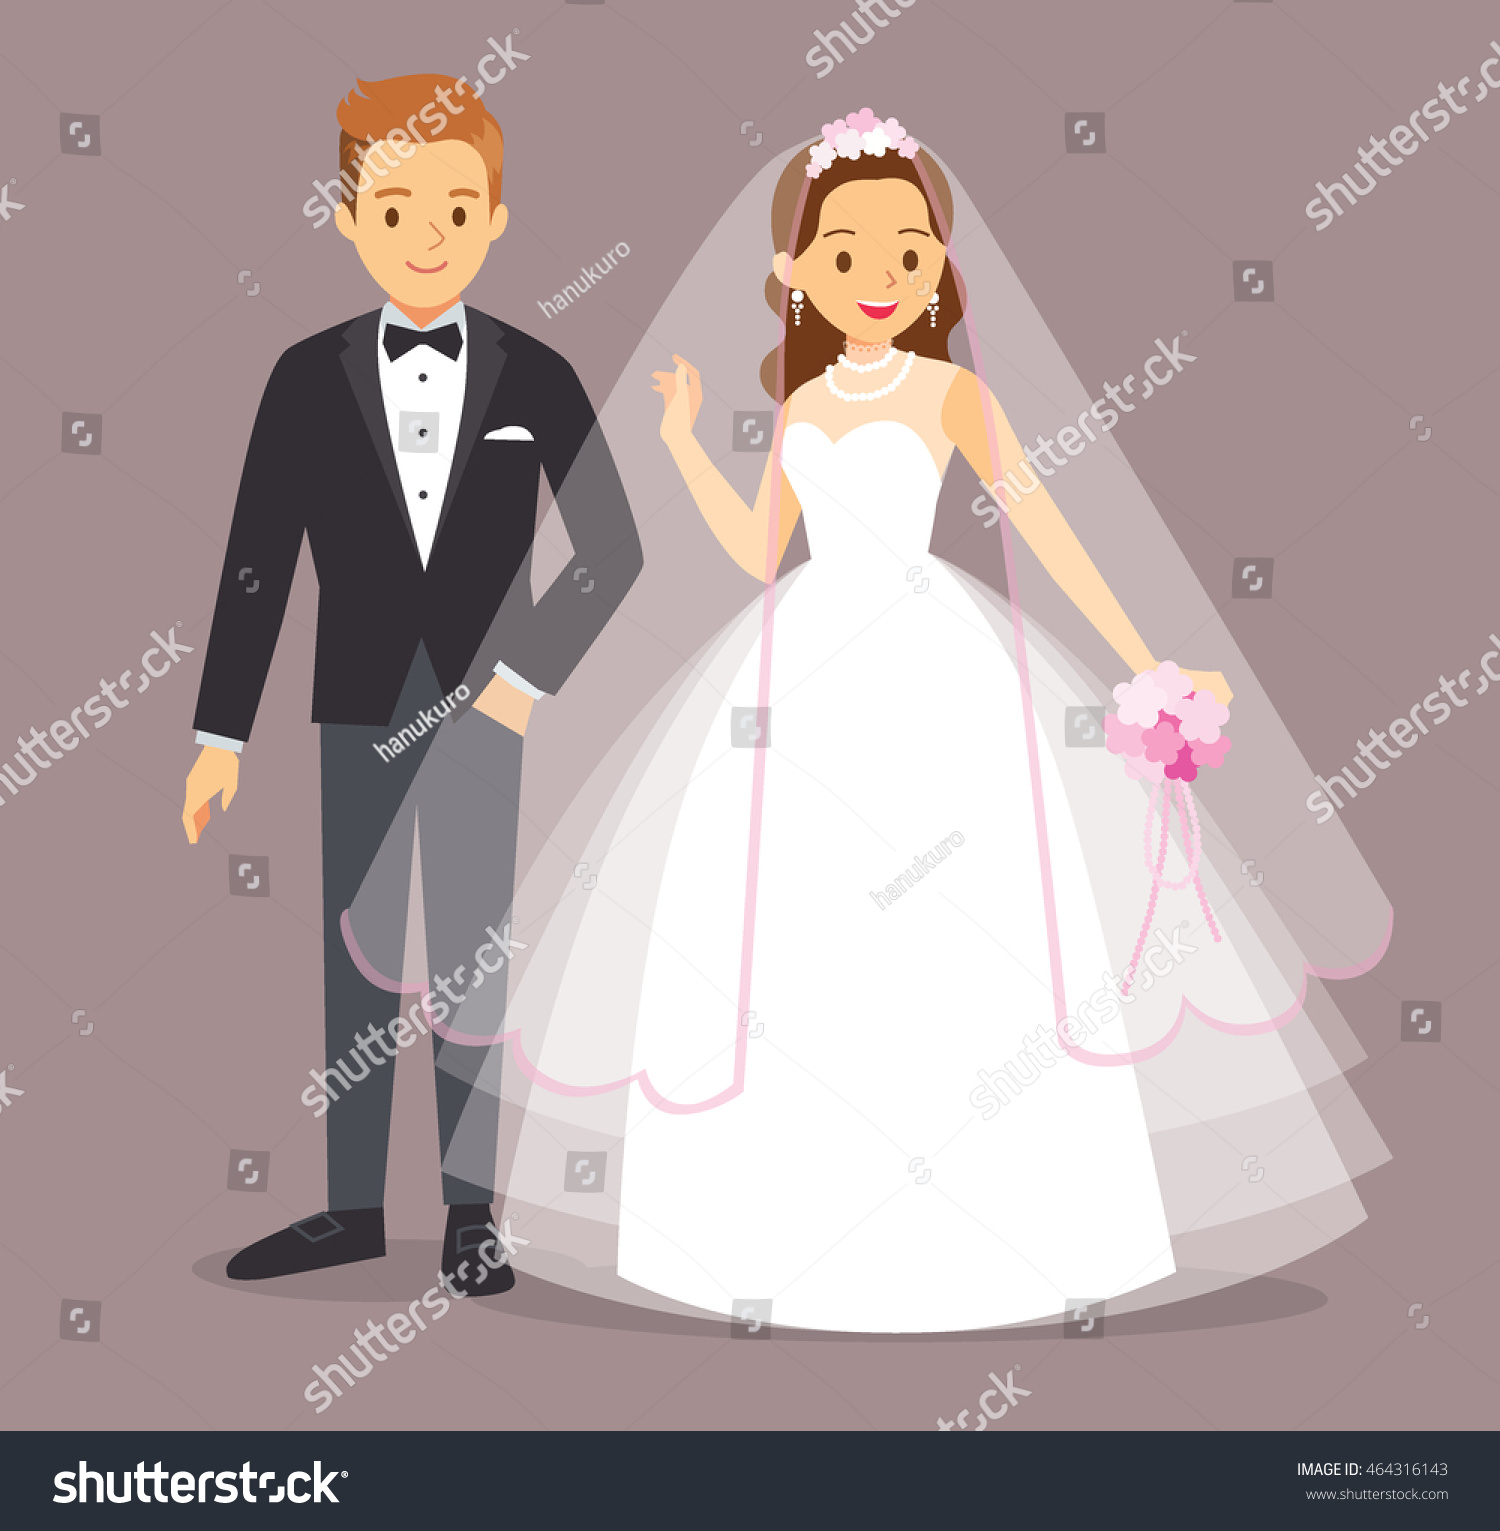 Cartoon Flat Vector Illustration Wedding Invitation Stock Vector ...